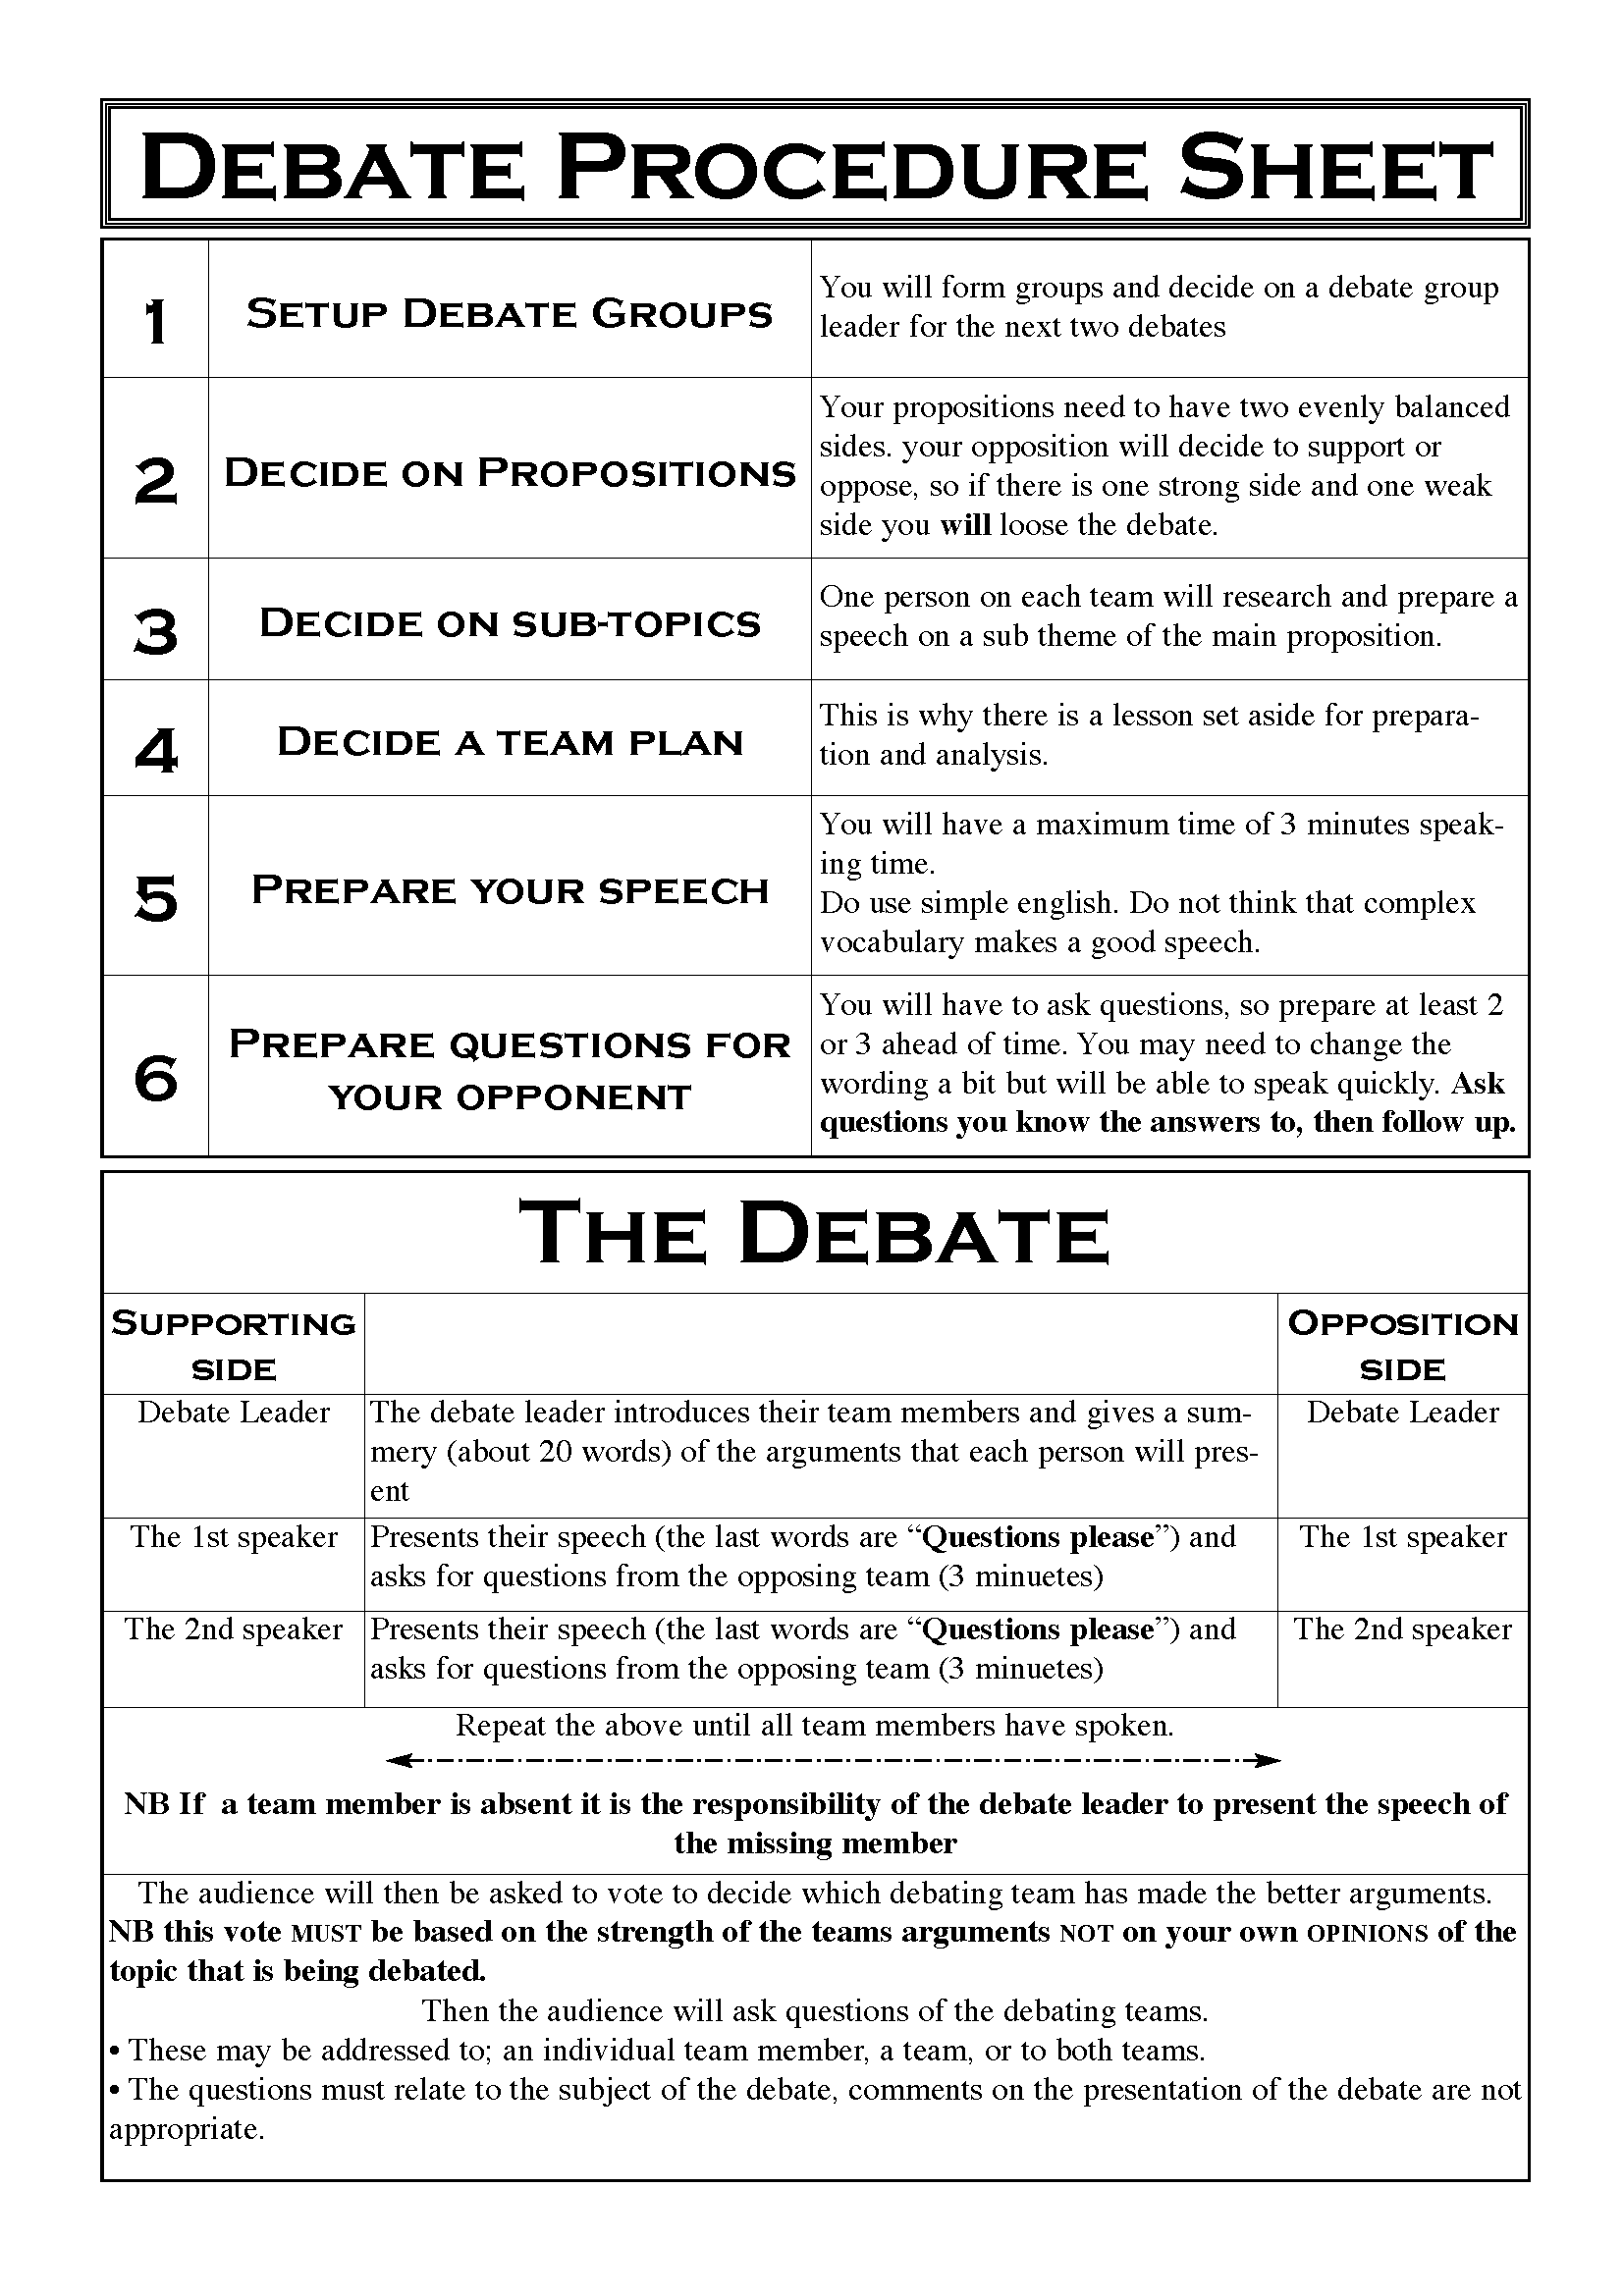 debate-procedure